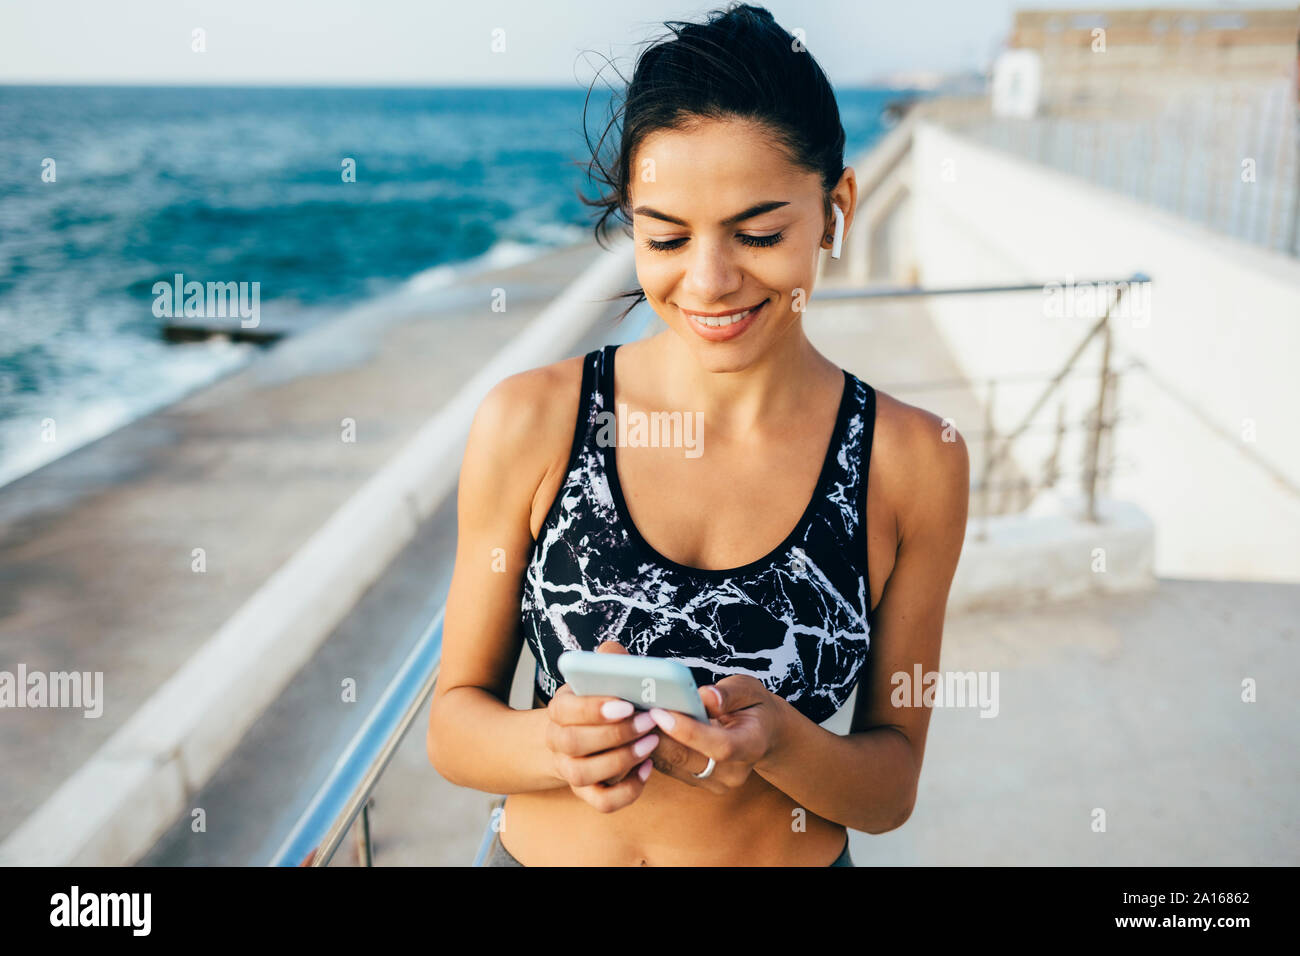 Frau mit Smartphone und In-ear während des Trainings, sitzend auf einem Pier Stockfoto